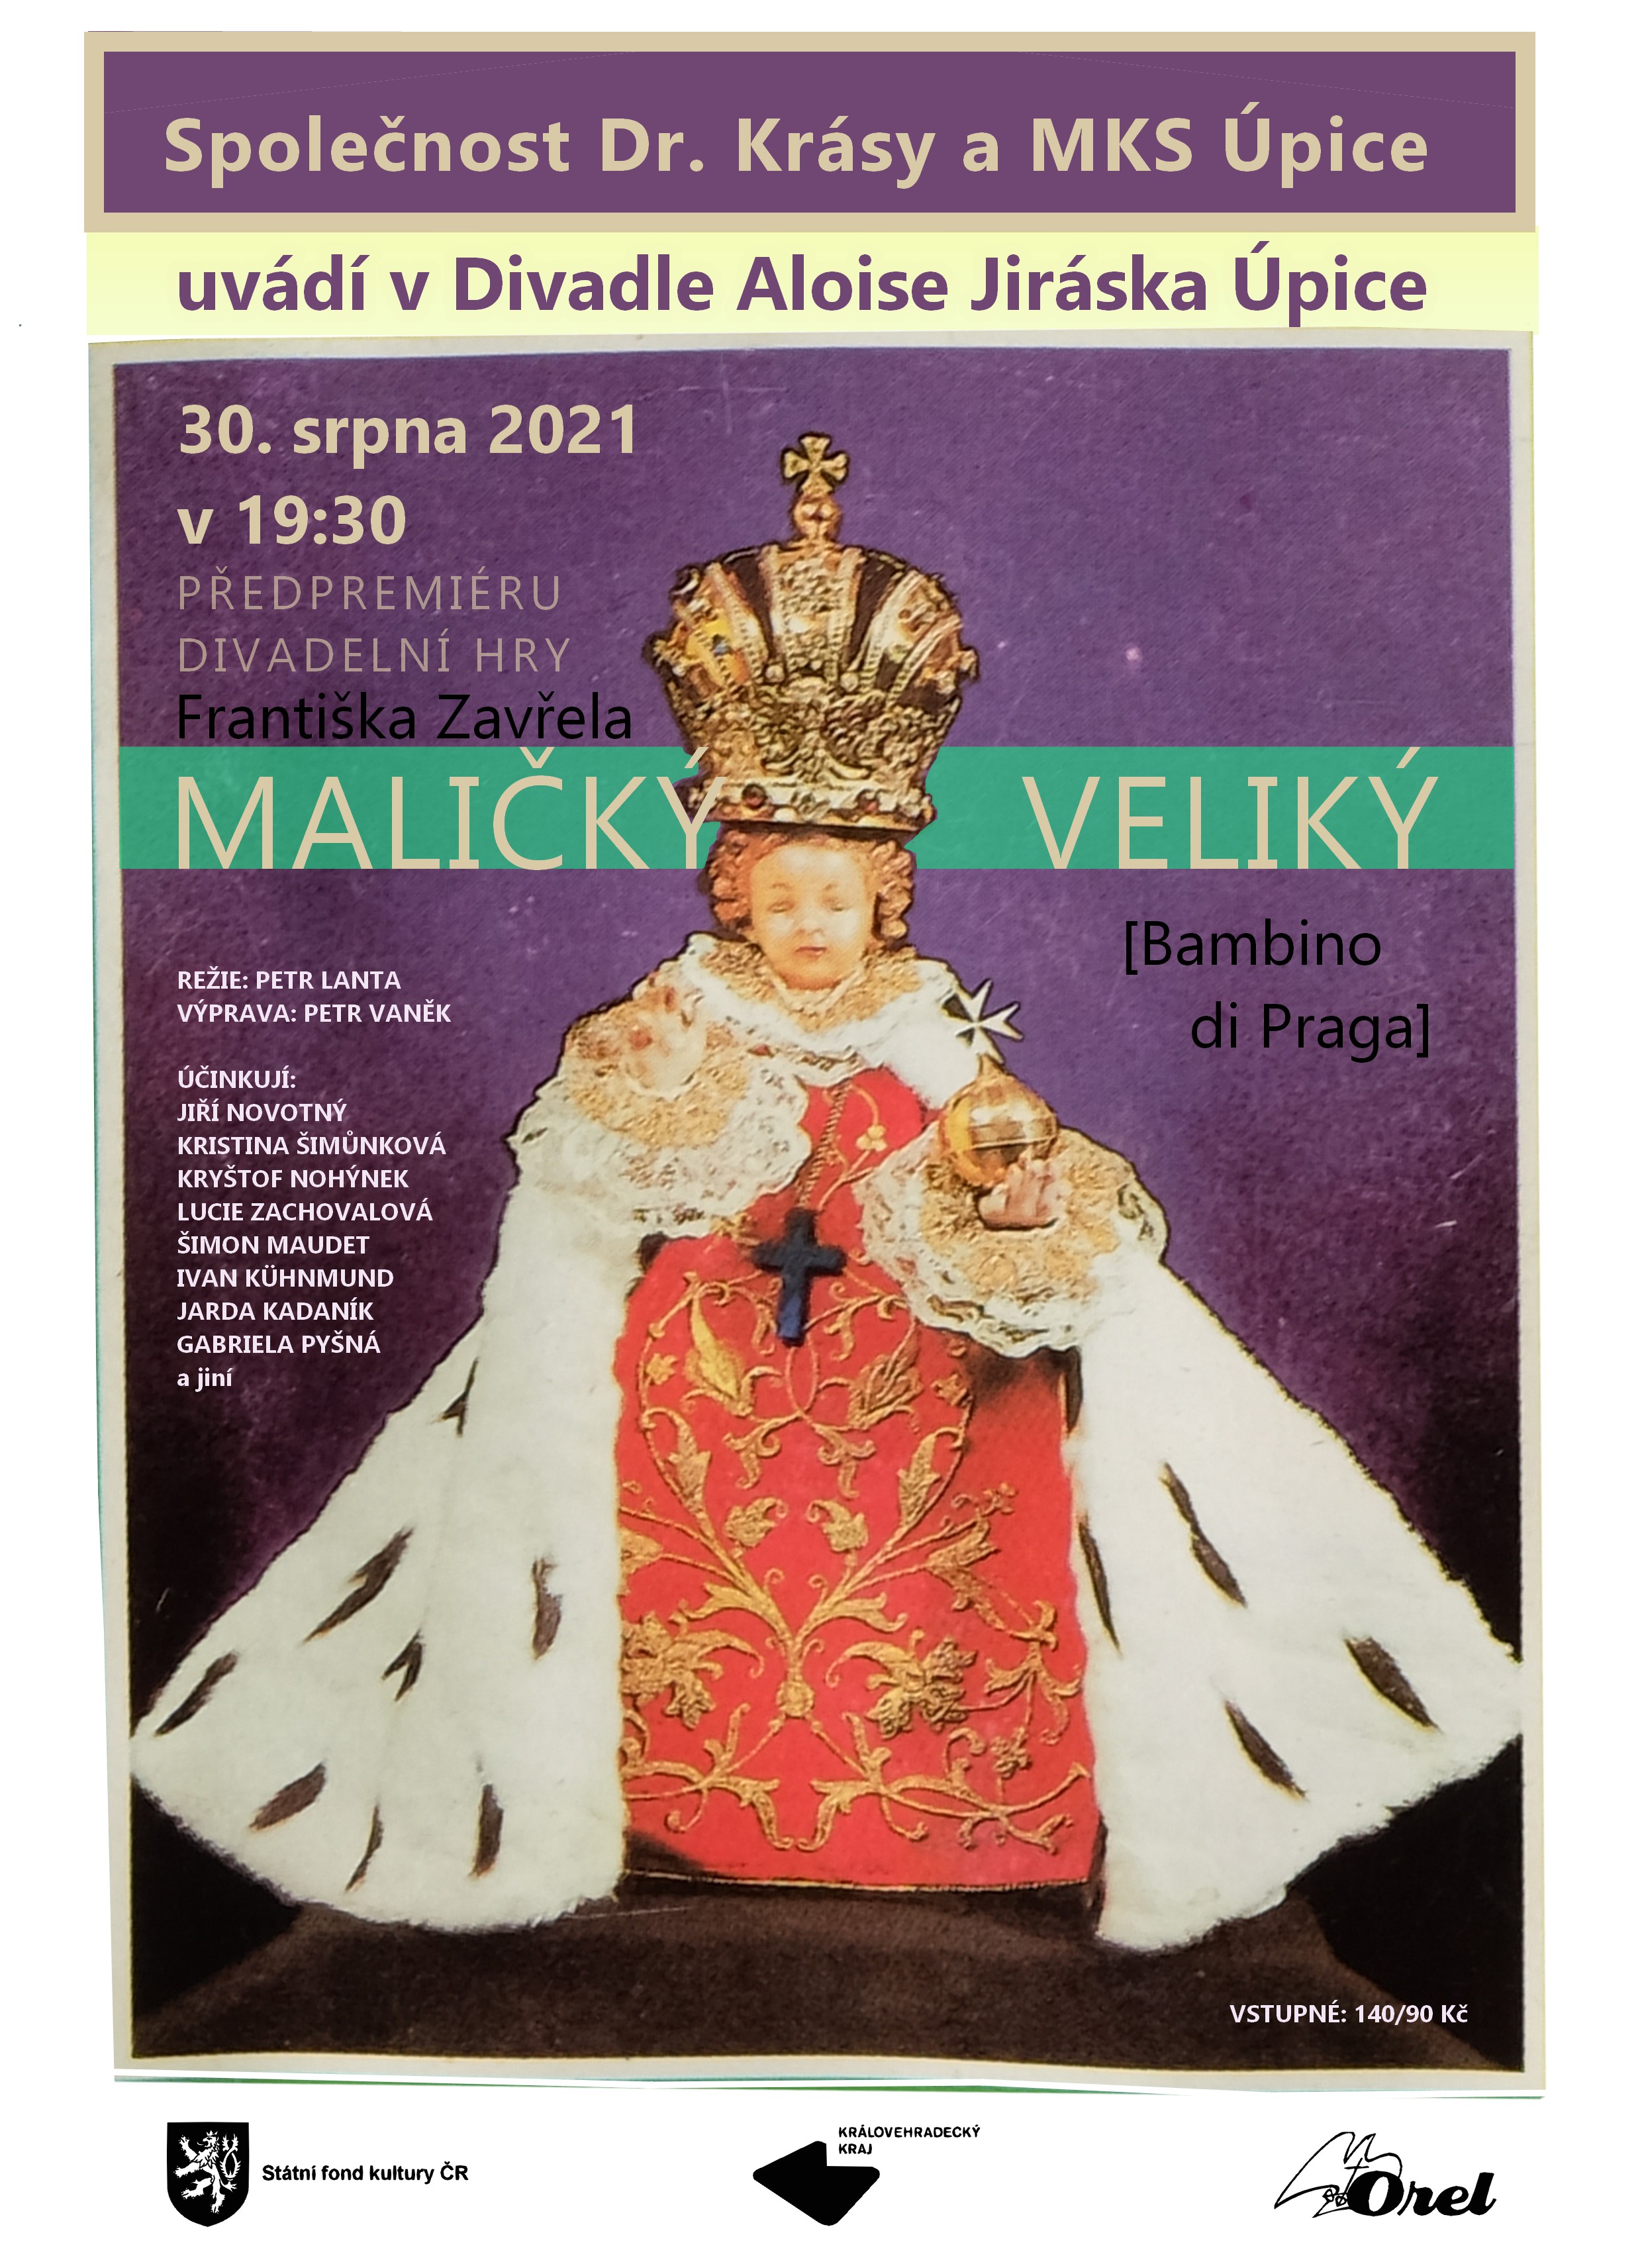 Plakát na předpremiéru Maličký veliký (Bambino di Praga) 30. 8. 2021 v Úpici